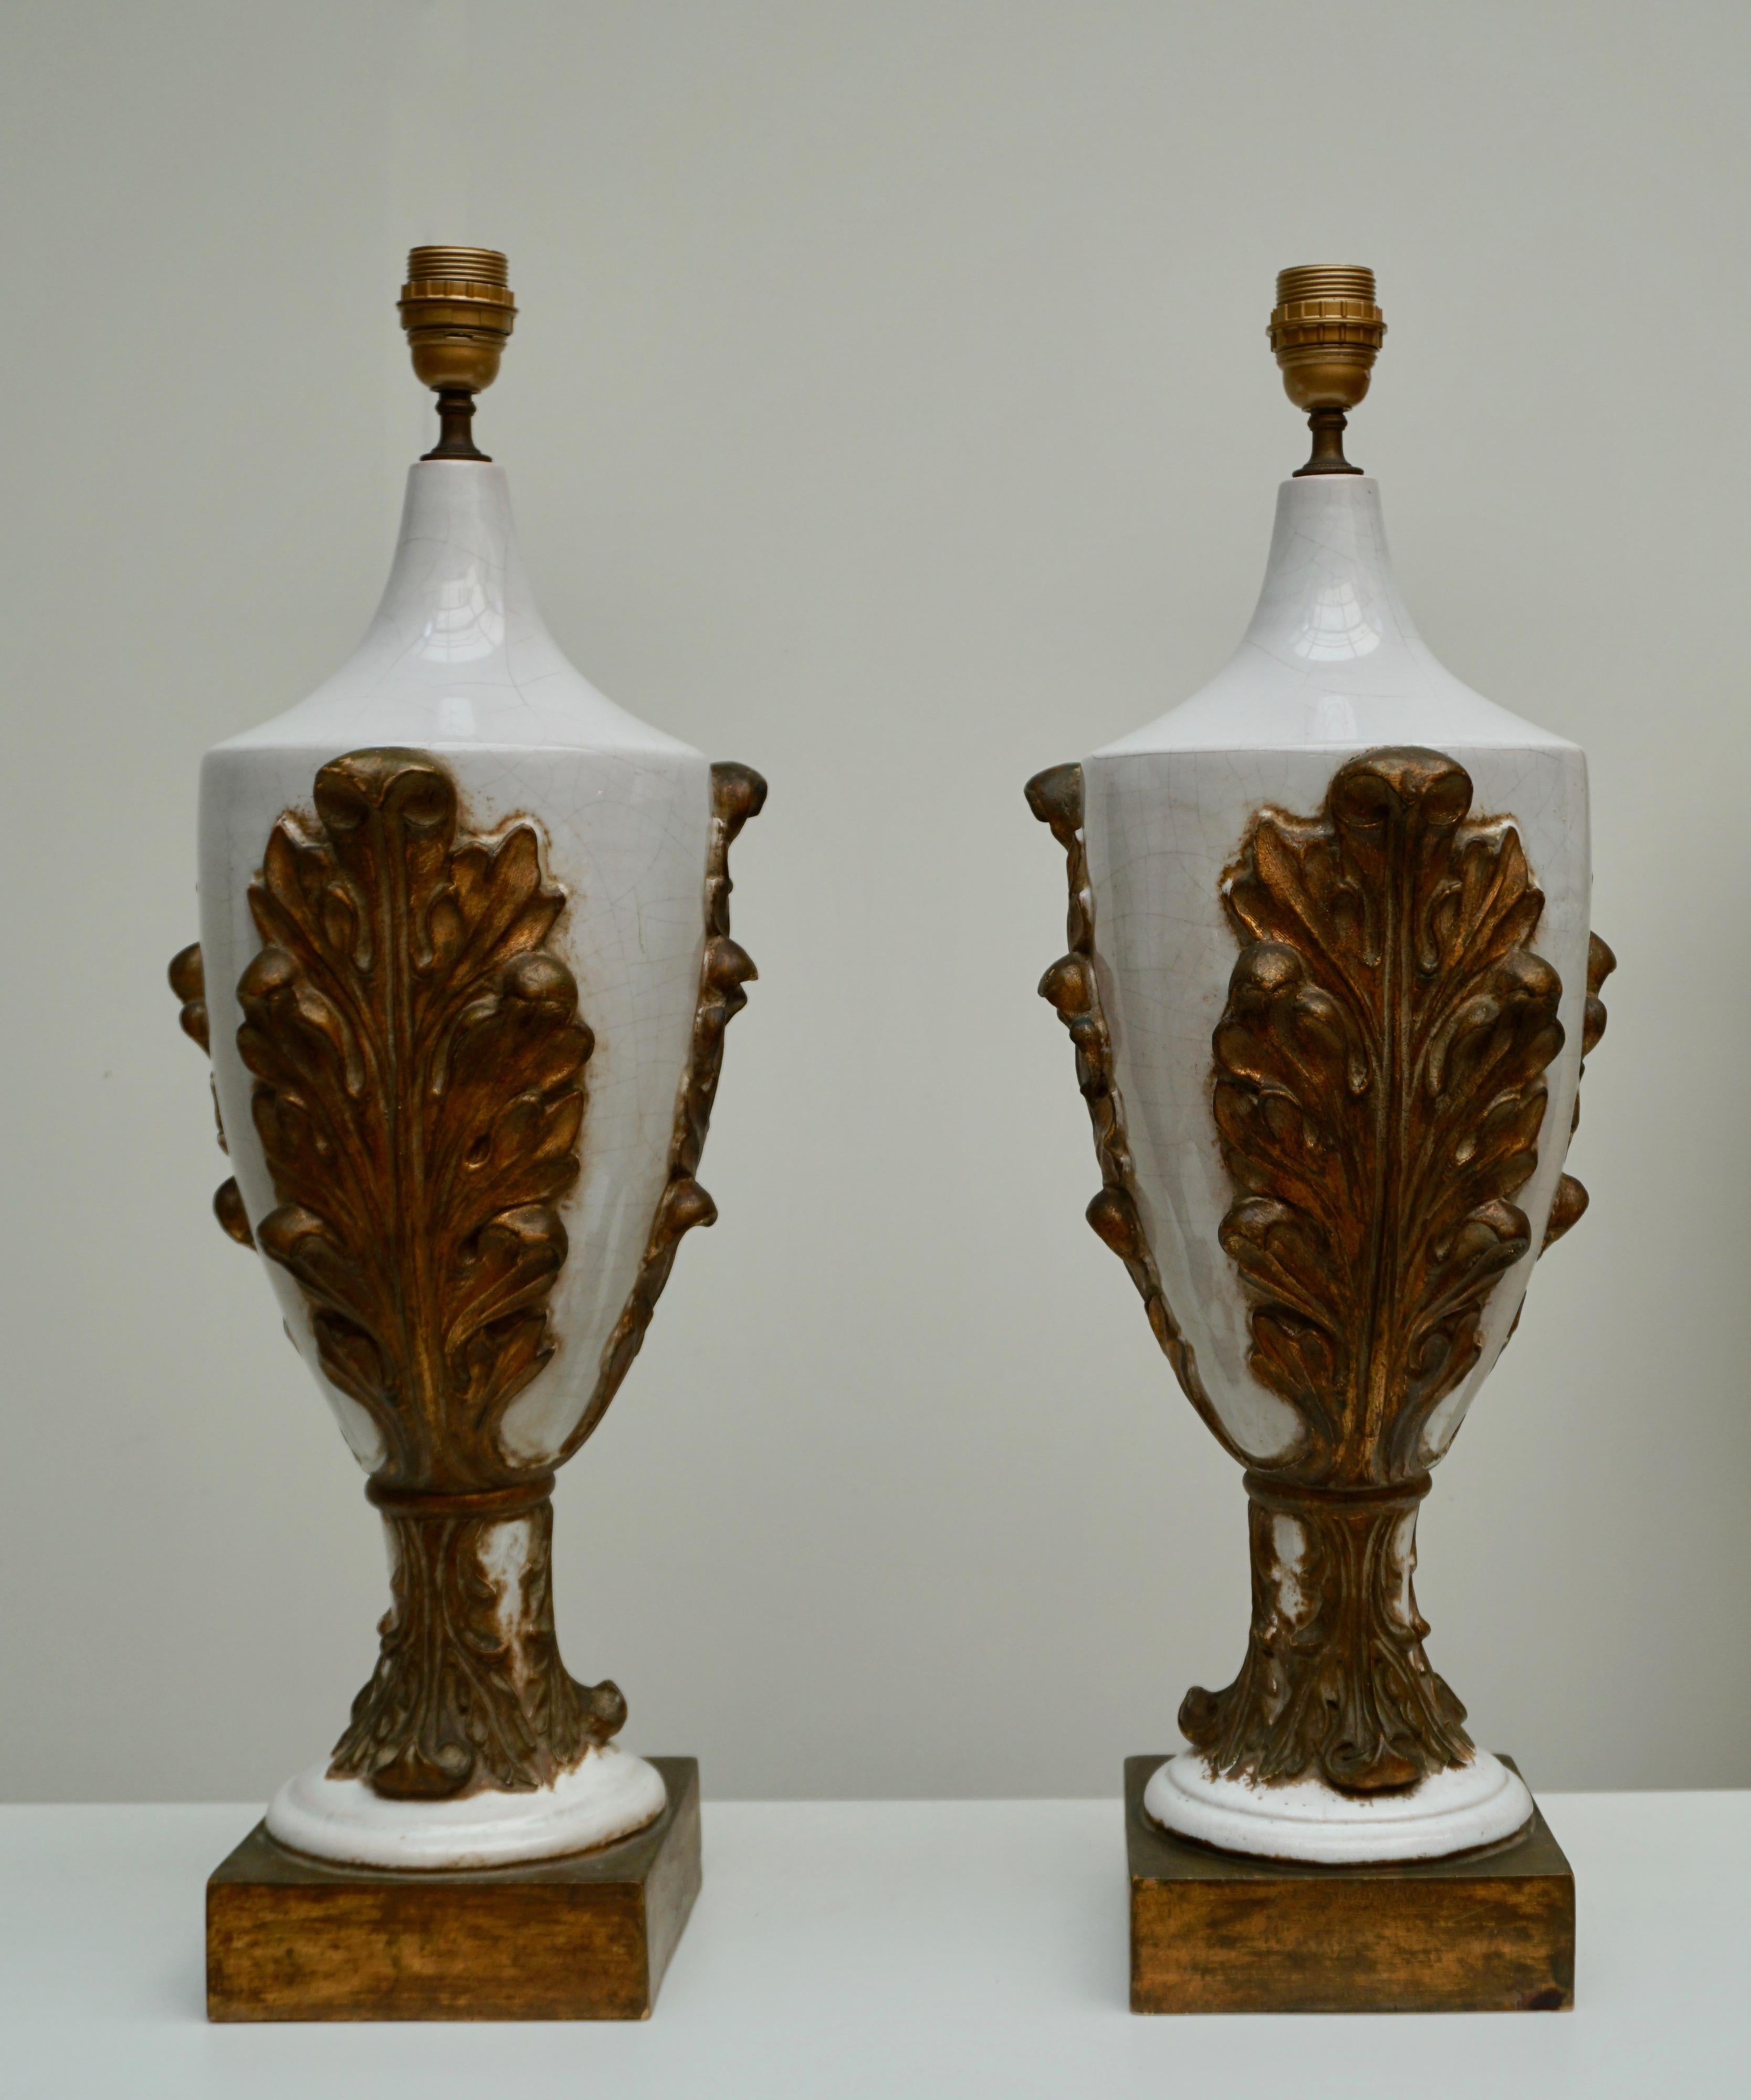 Zwei italienische Tischlampen aus weißer Keramik mit goldfarbenen, patinierten Blättern setzen sich ab.
Durchmesser des schwarzen Lampenschirms 34 cm.
Höhe mit schwarzem Lampenschirm 84 cm.
Höhe Sockel mit Beschlag 69 cm, ohne Beschlag 60